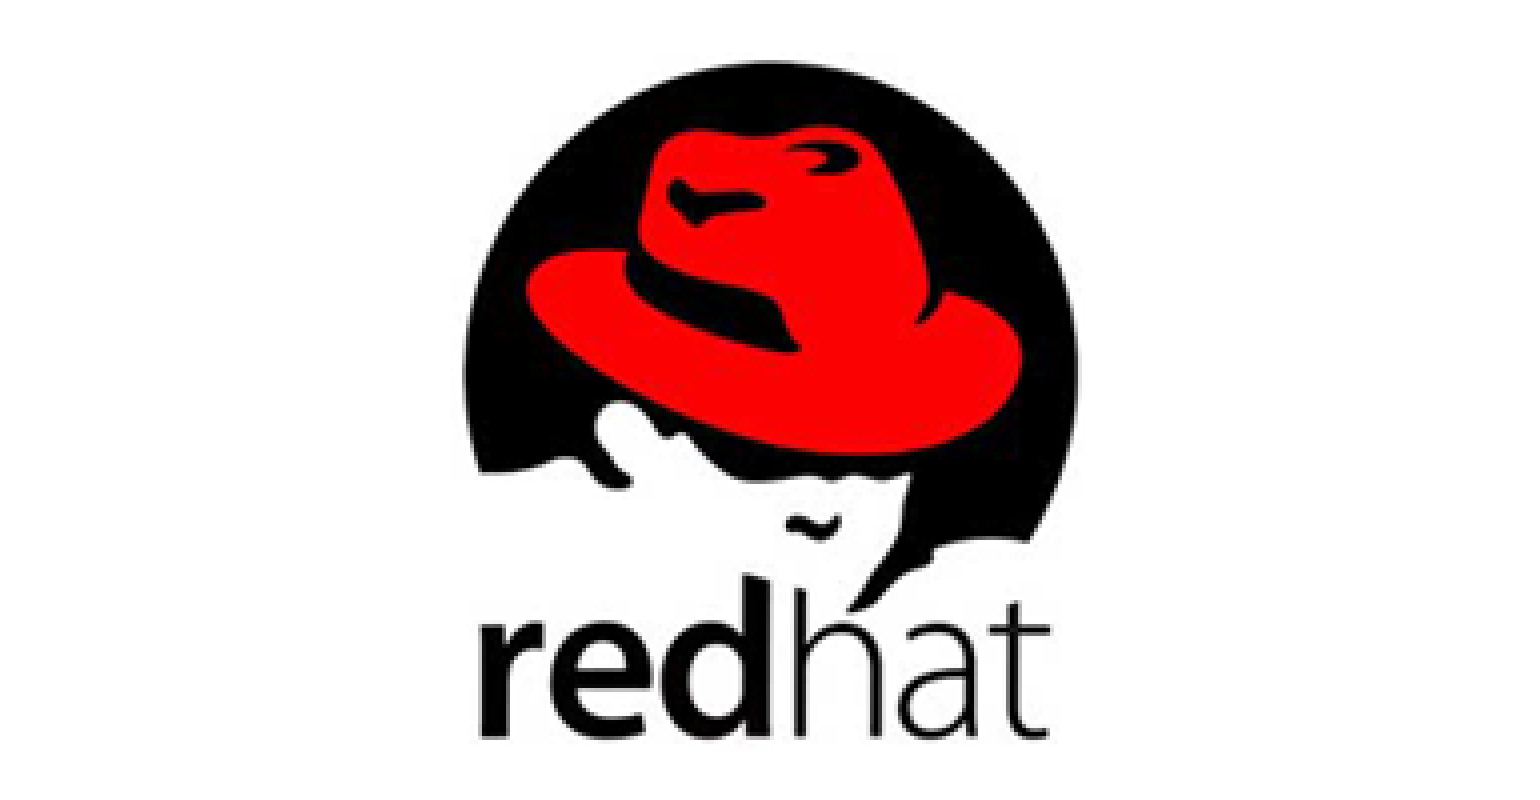 Red hat 4. Red hat Enterprise Linux (RHEL). Red hat логотип. Red hat Enterprise Linux logo. Red hat логотип без фона.